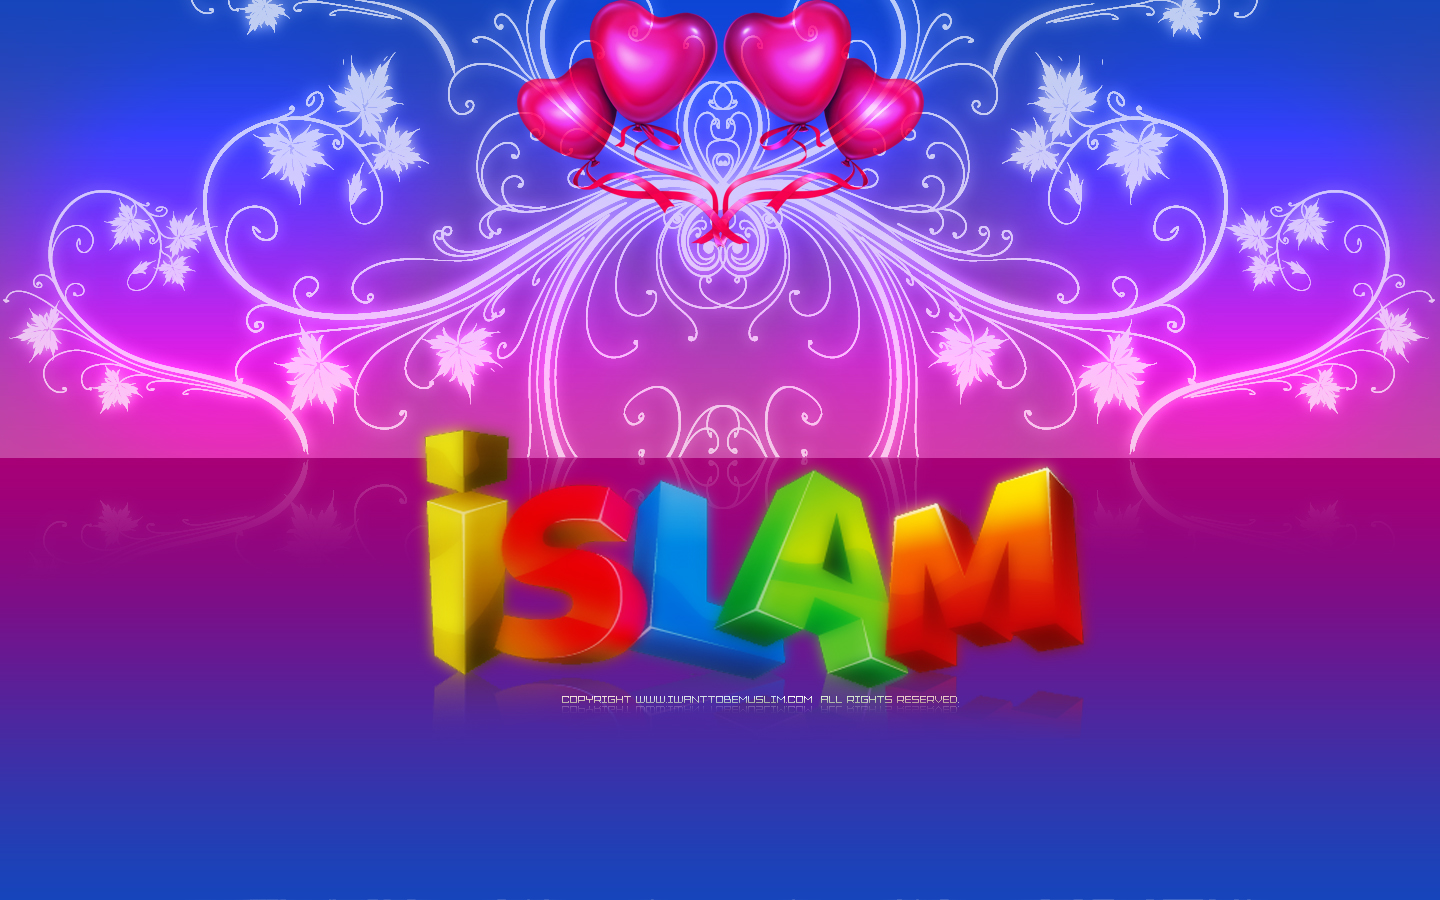 http://3.bp.blogspot.com/-hLj3UwNGns0/UNk1_-gWq6I/AAAAAAAANDg/-mbJgEpp1VA/s1600/free-islamic-wallpaper-2011-2012-HD-1440-900-islam.jpg